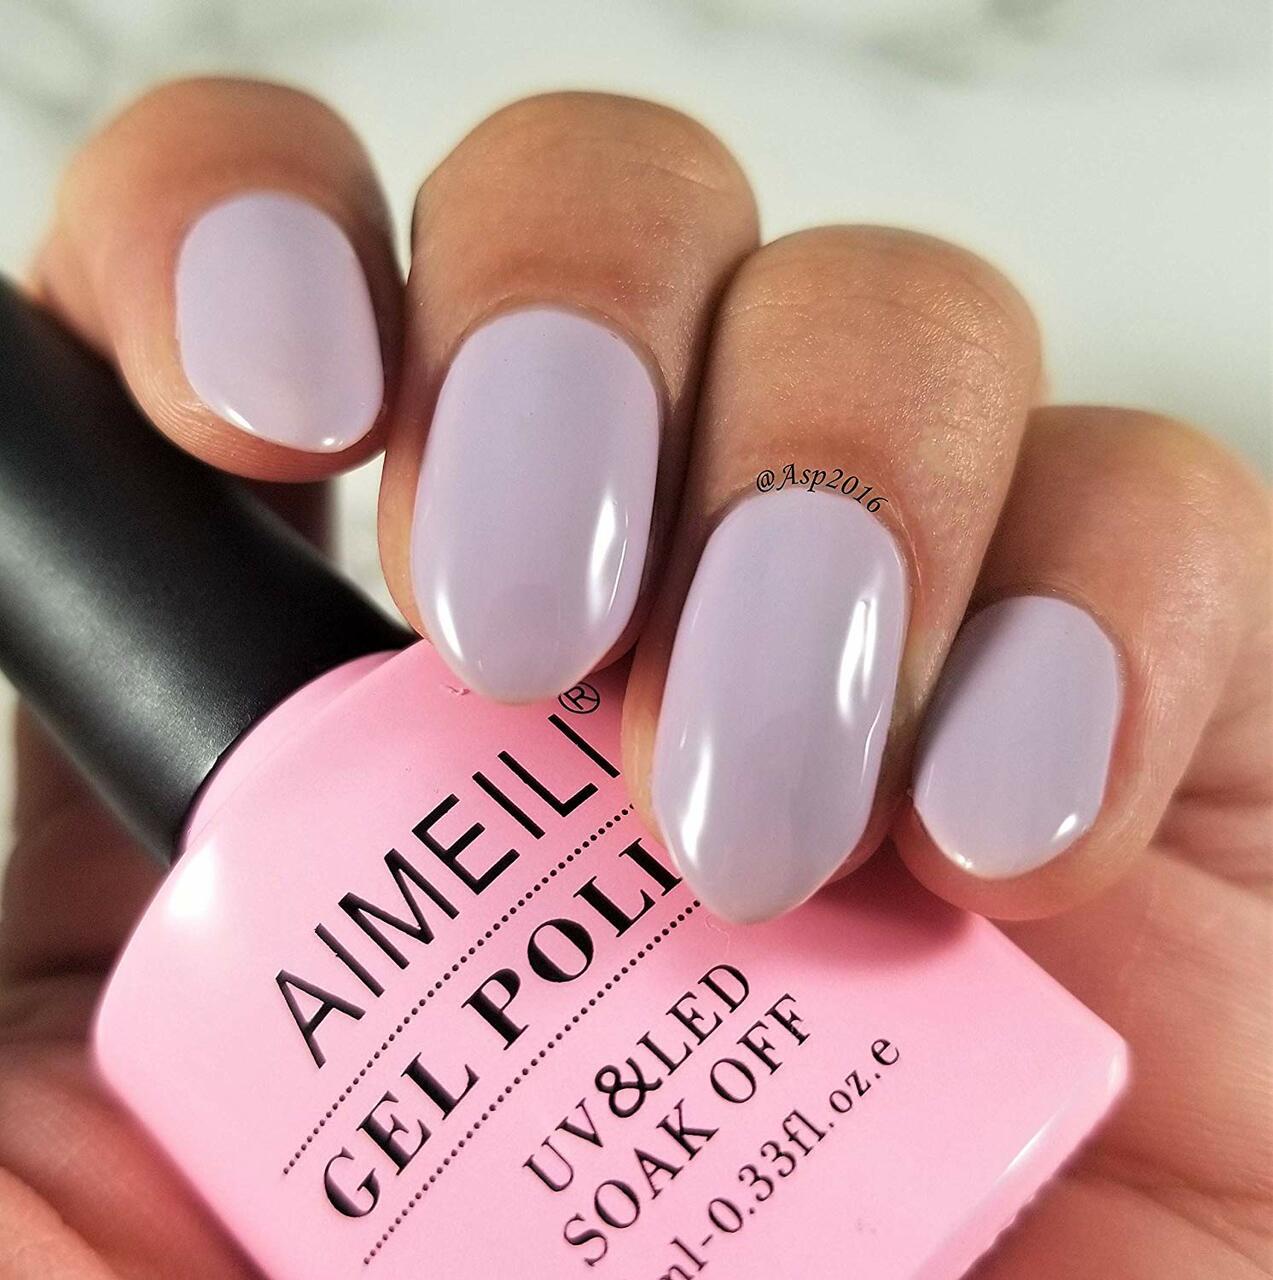 lavendar nail polish